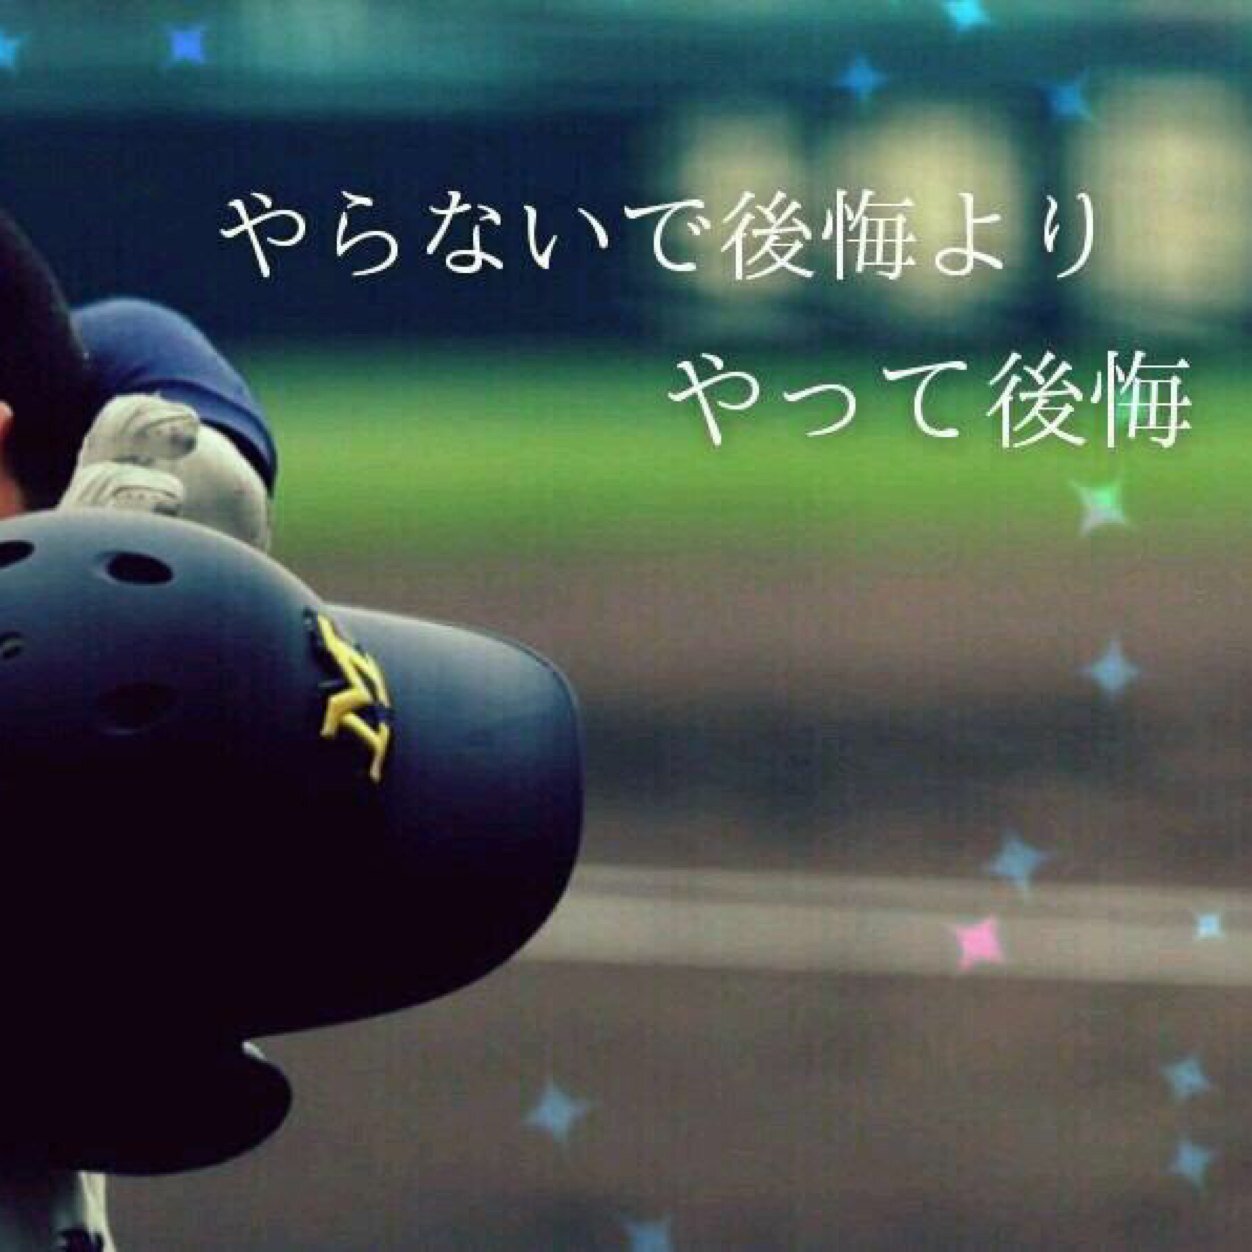 これまでで最高の野球 かっこいい 名言 画像 無料の日本イラスト